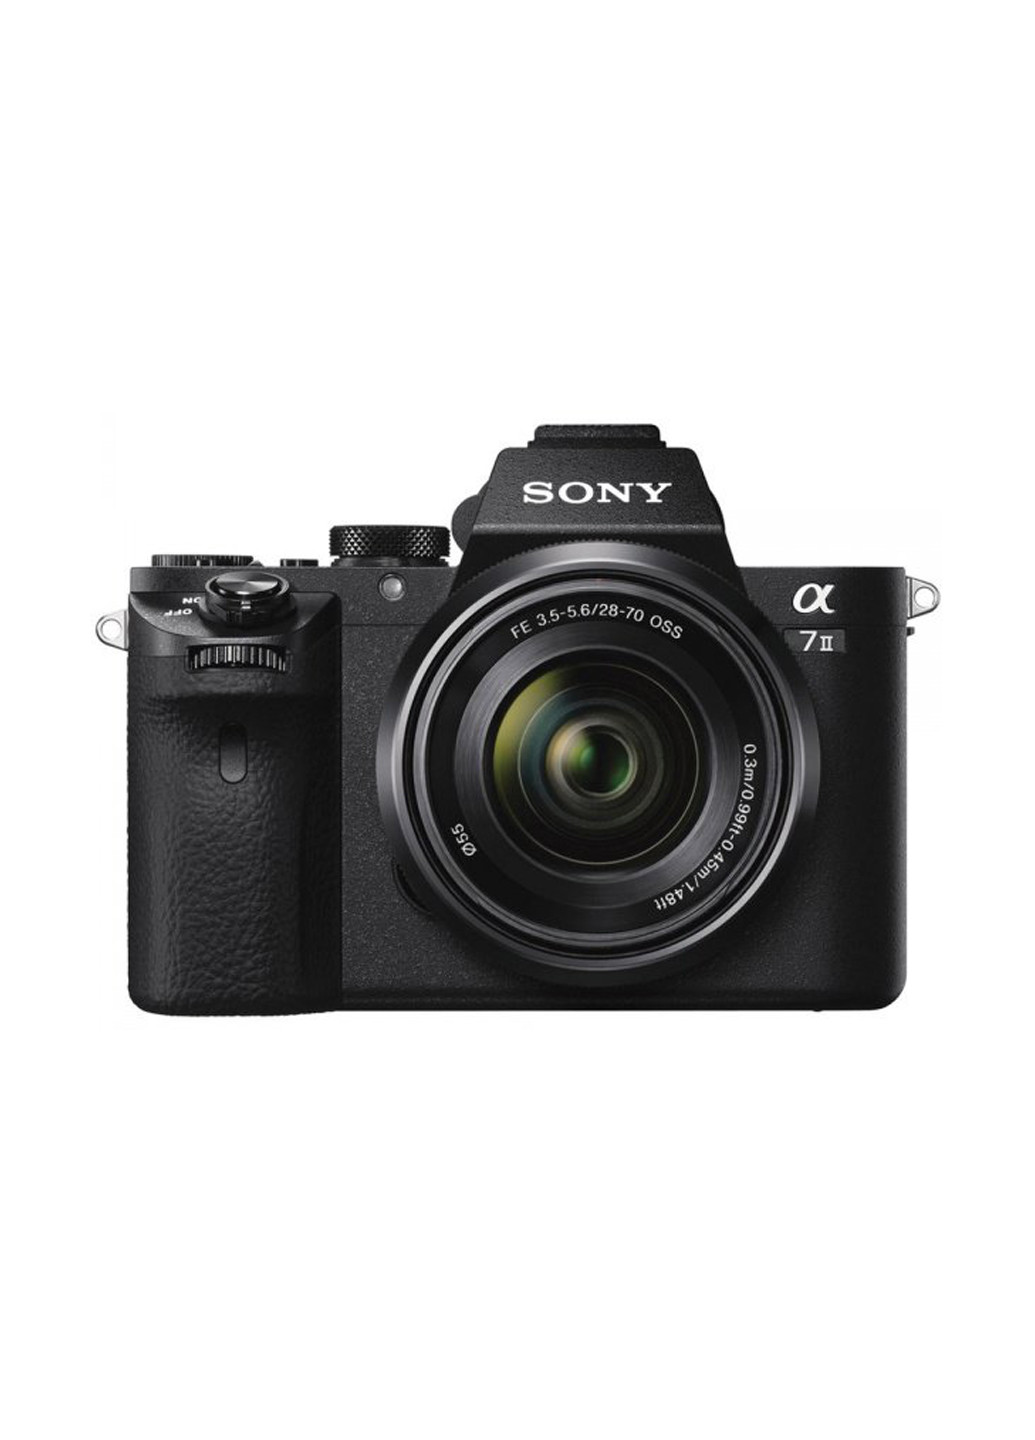 Системна фотокамера Alpha 7M2 + об'єктив 28-70 KIT black Sony alpha 7m2 + объектив 28-70 kit black (134769282)